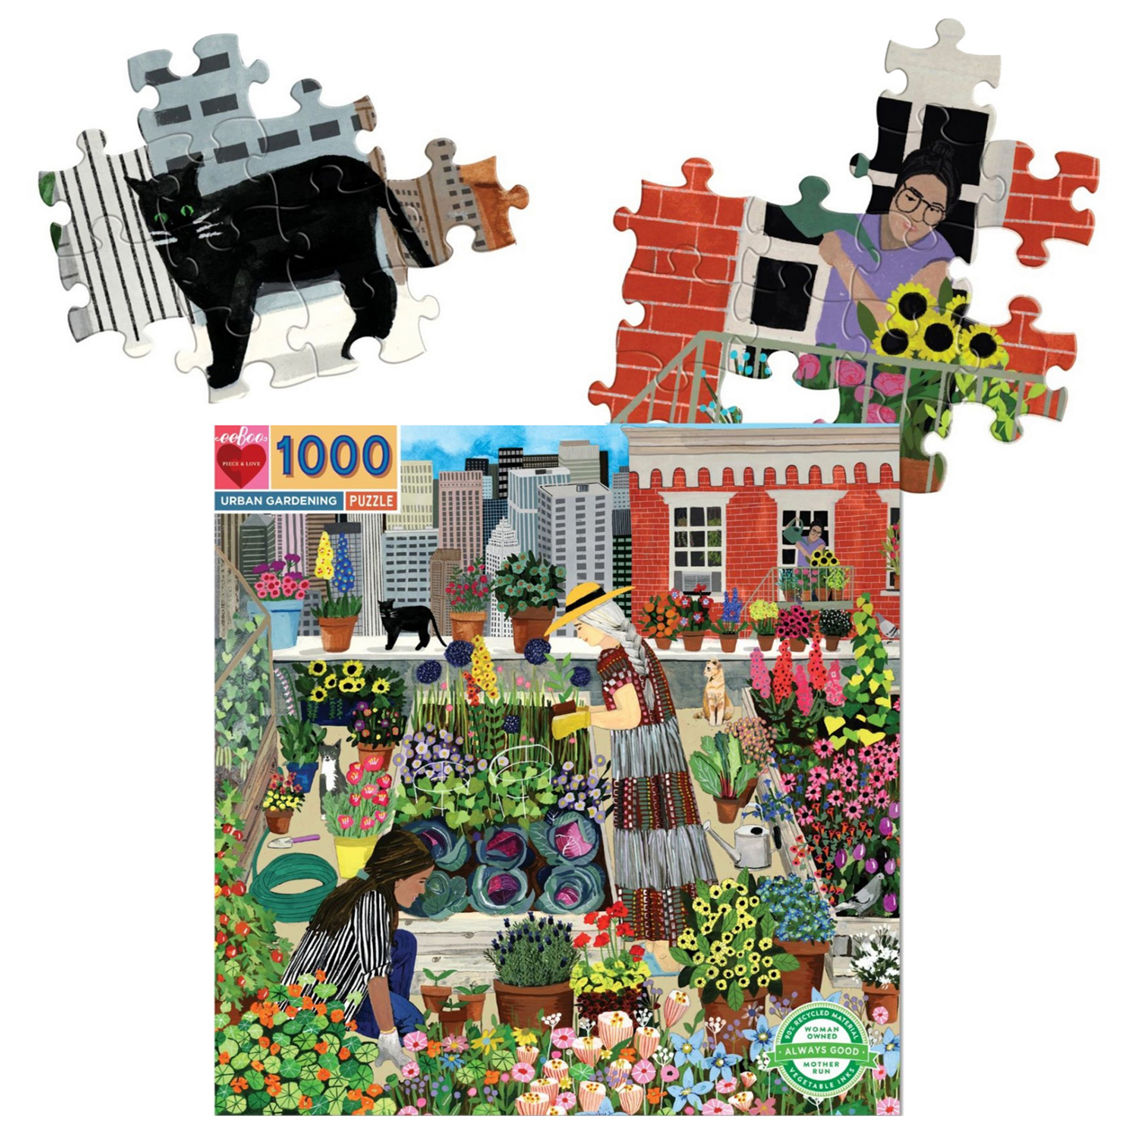 Urban Gardening 1000 pc. Square Puzzle - Image 3 of 3